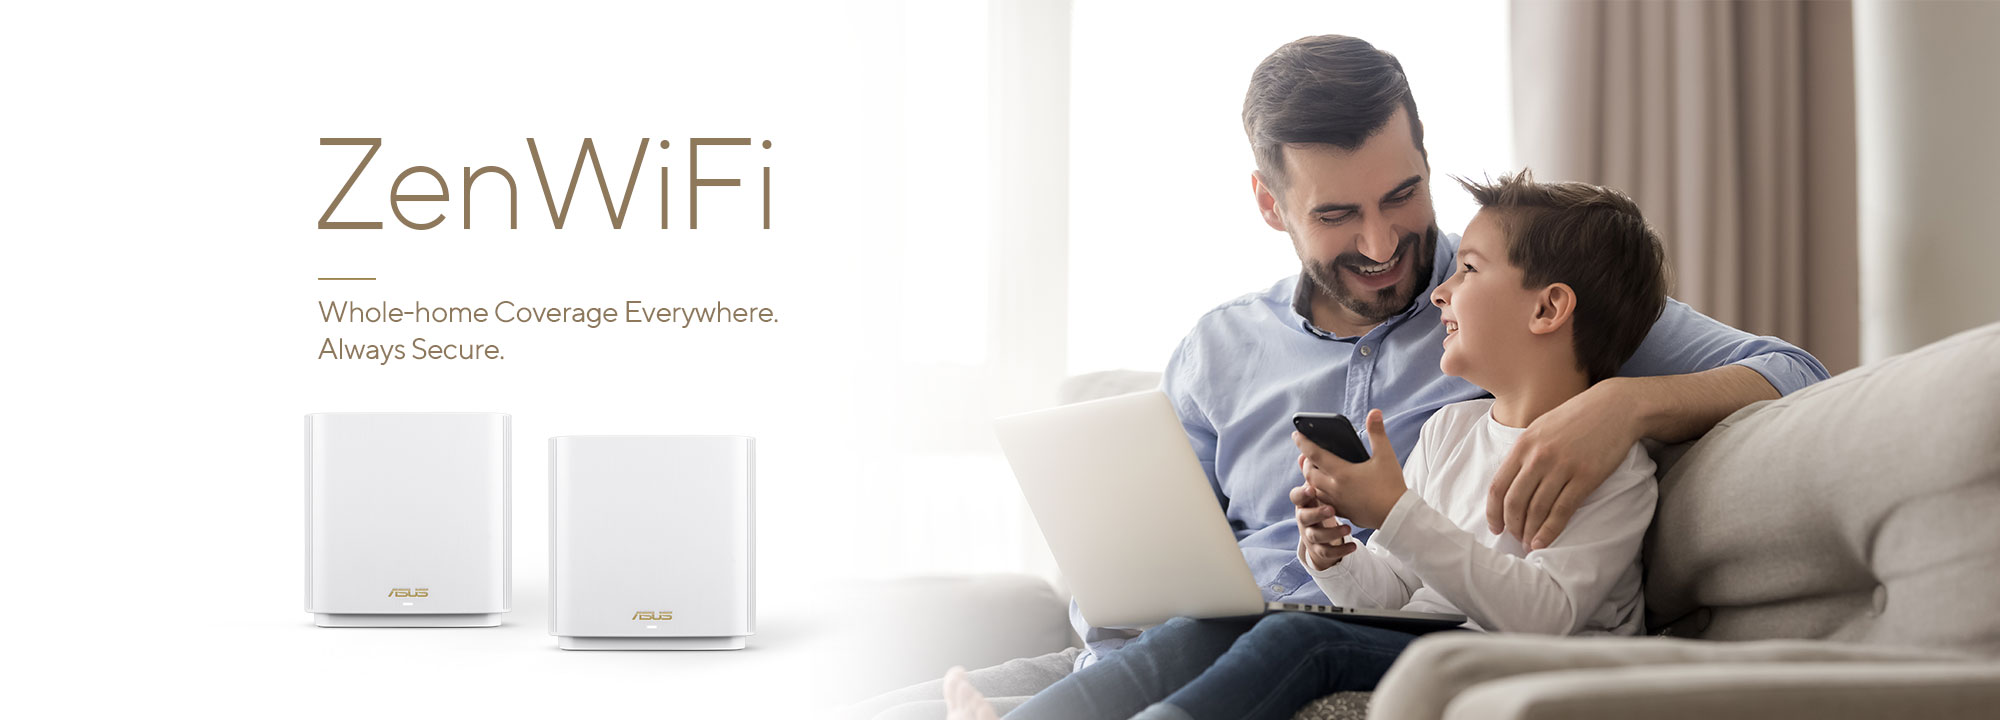 ASUS ZenWiFi è il miglior sistema WiFi mesh per tutta la casa, che fornisce una connettività WiFi stabile e veloce per tutti i tuoi dispositivi.